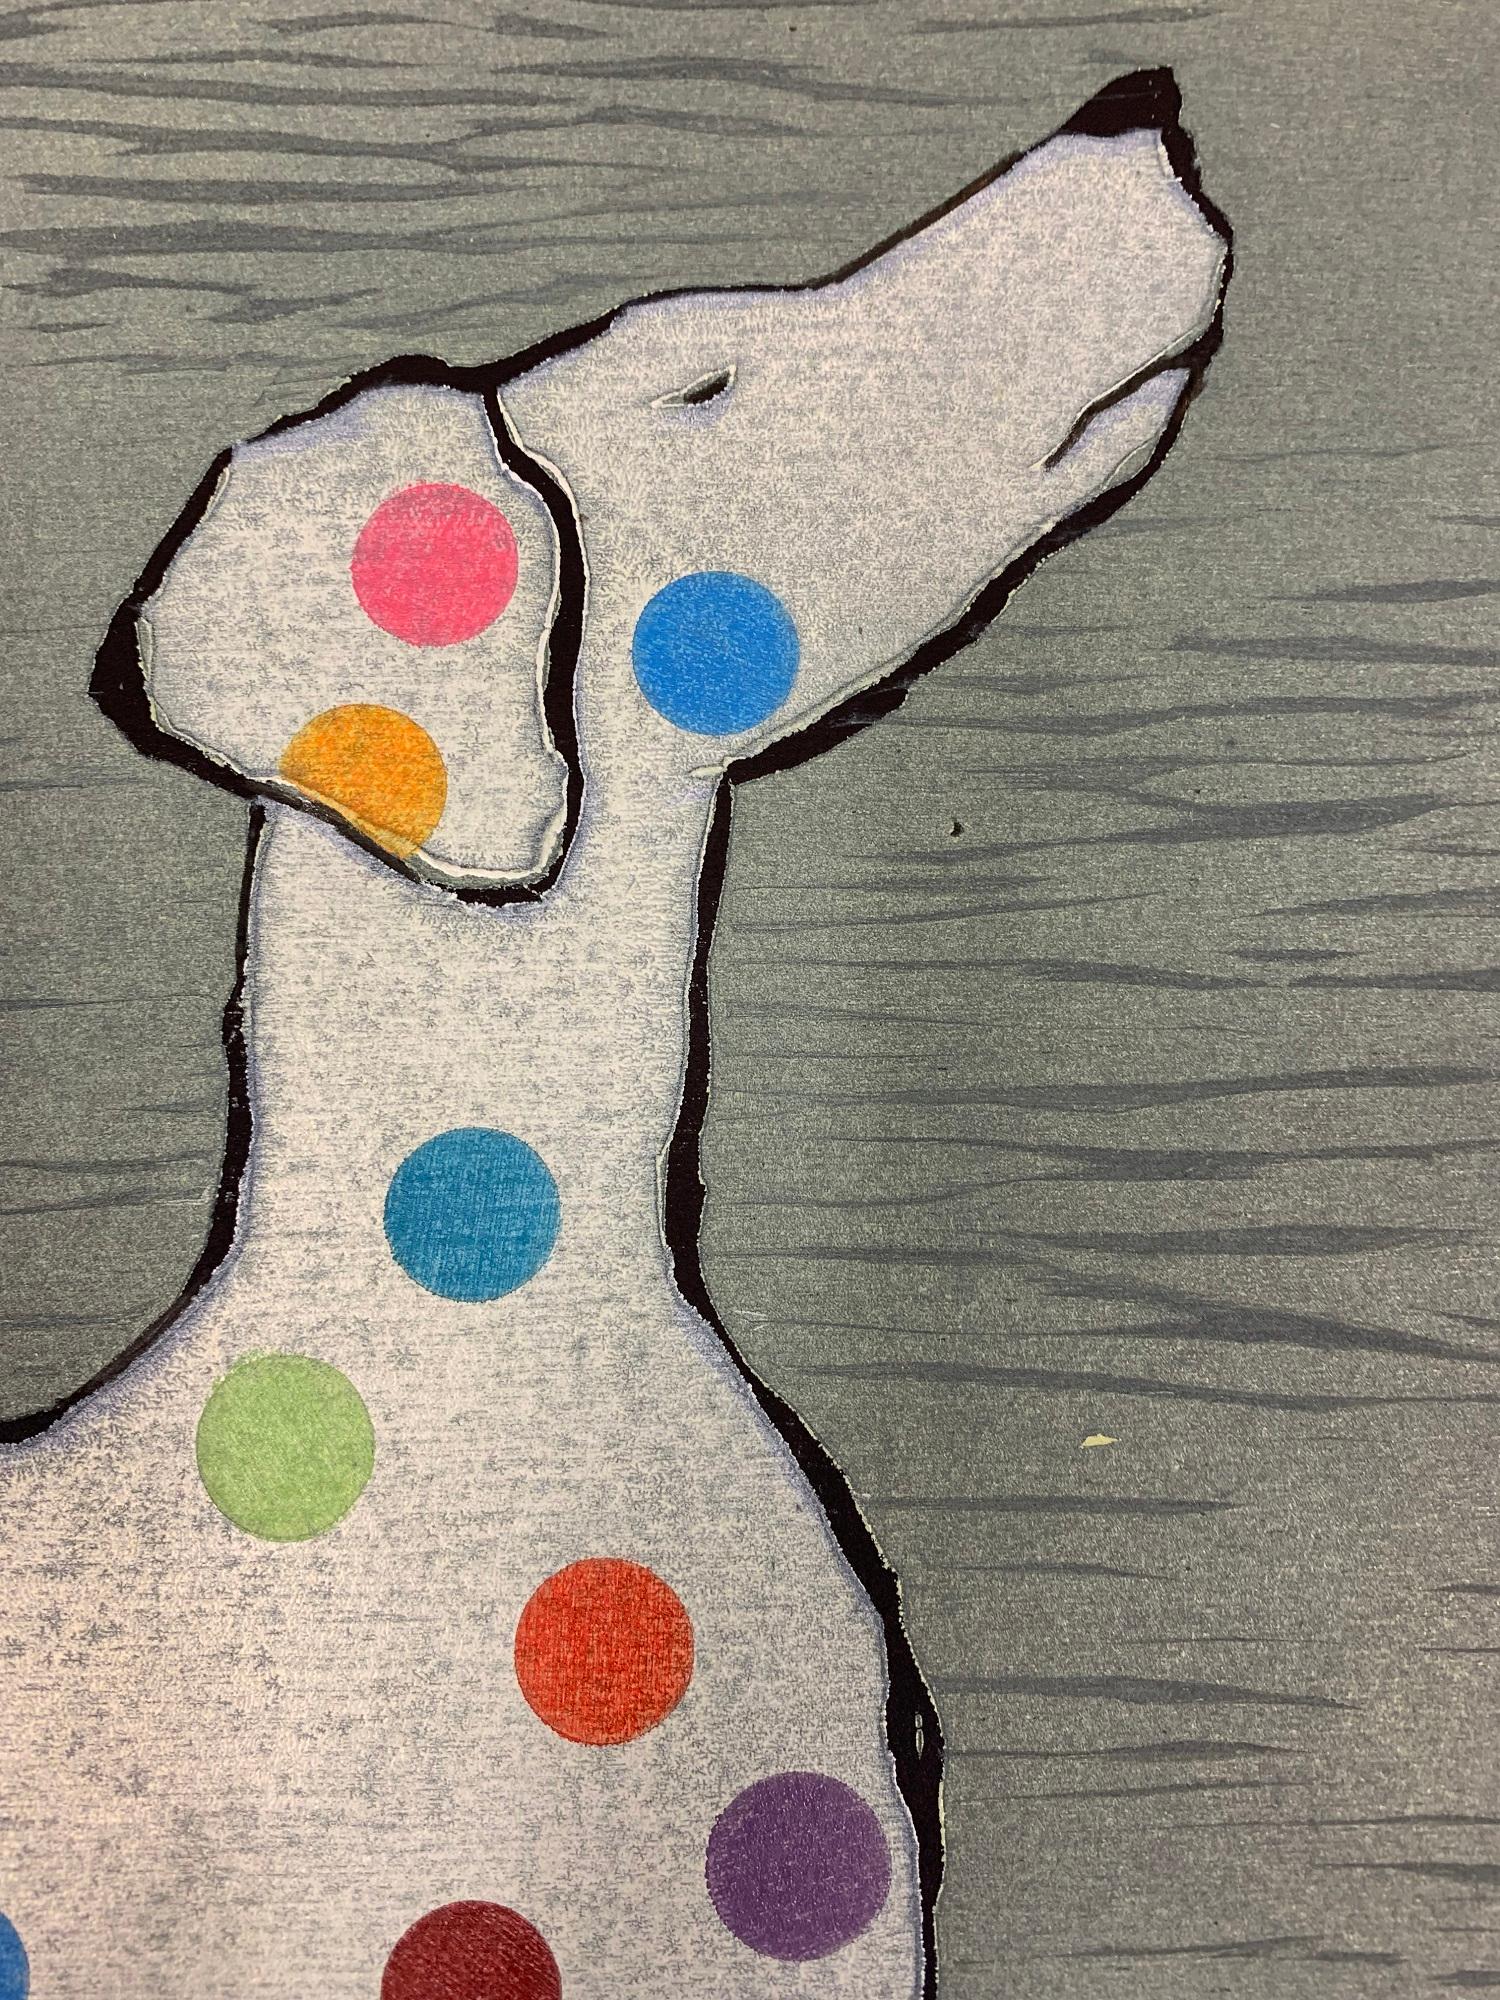 Le chien de Damien Hirst par Mychael Barratt
Impression d'art en édition limitée
Gravure sur bois faite à la main sur papier
Edition de 100
Signé et titré
Taille complète de la feuille : 63 H x 67 L x 0,1 P cm (24,80 x 26,38 x 0,04 in)
Veuillez